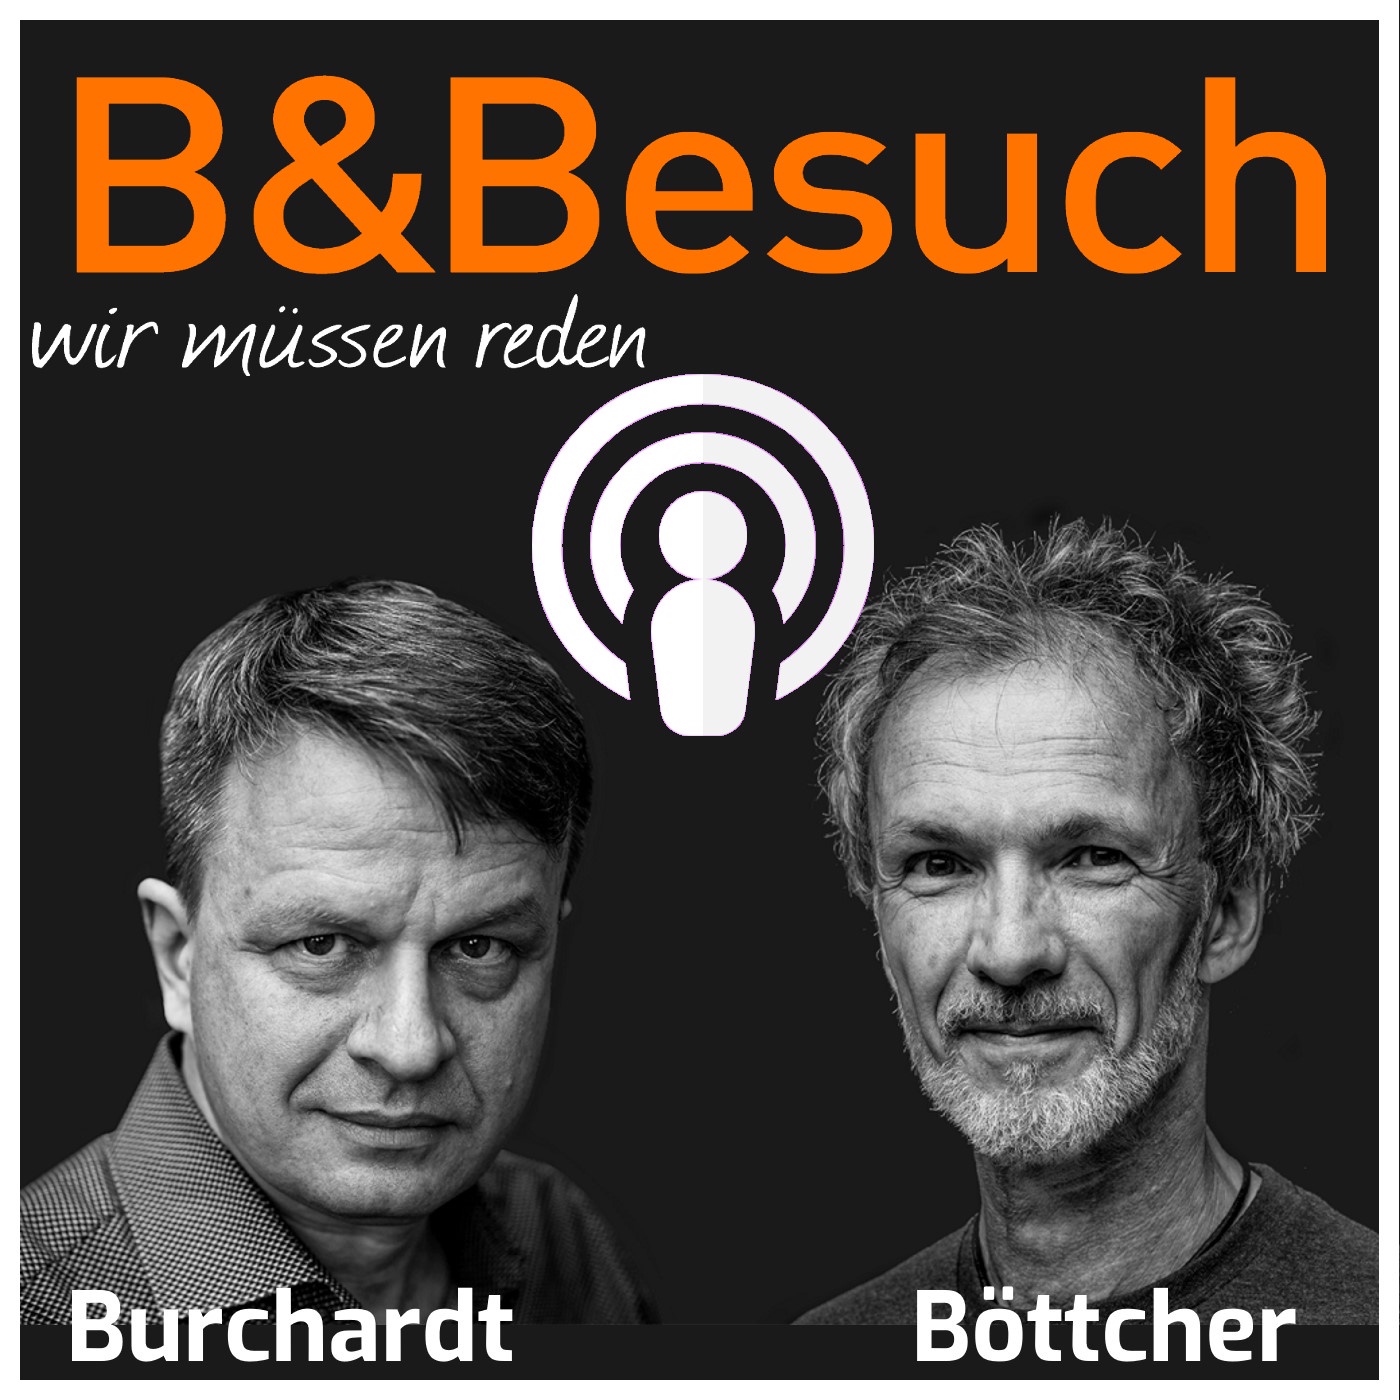 B&Besuch - Matthias Burchardt im Gespräch mit Jörg Drieselmann